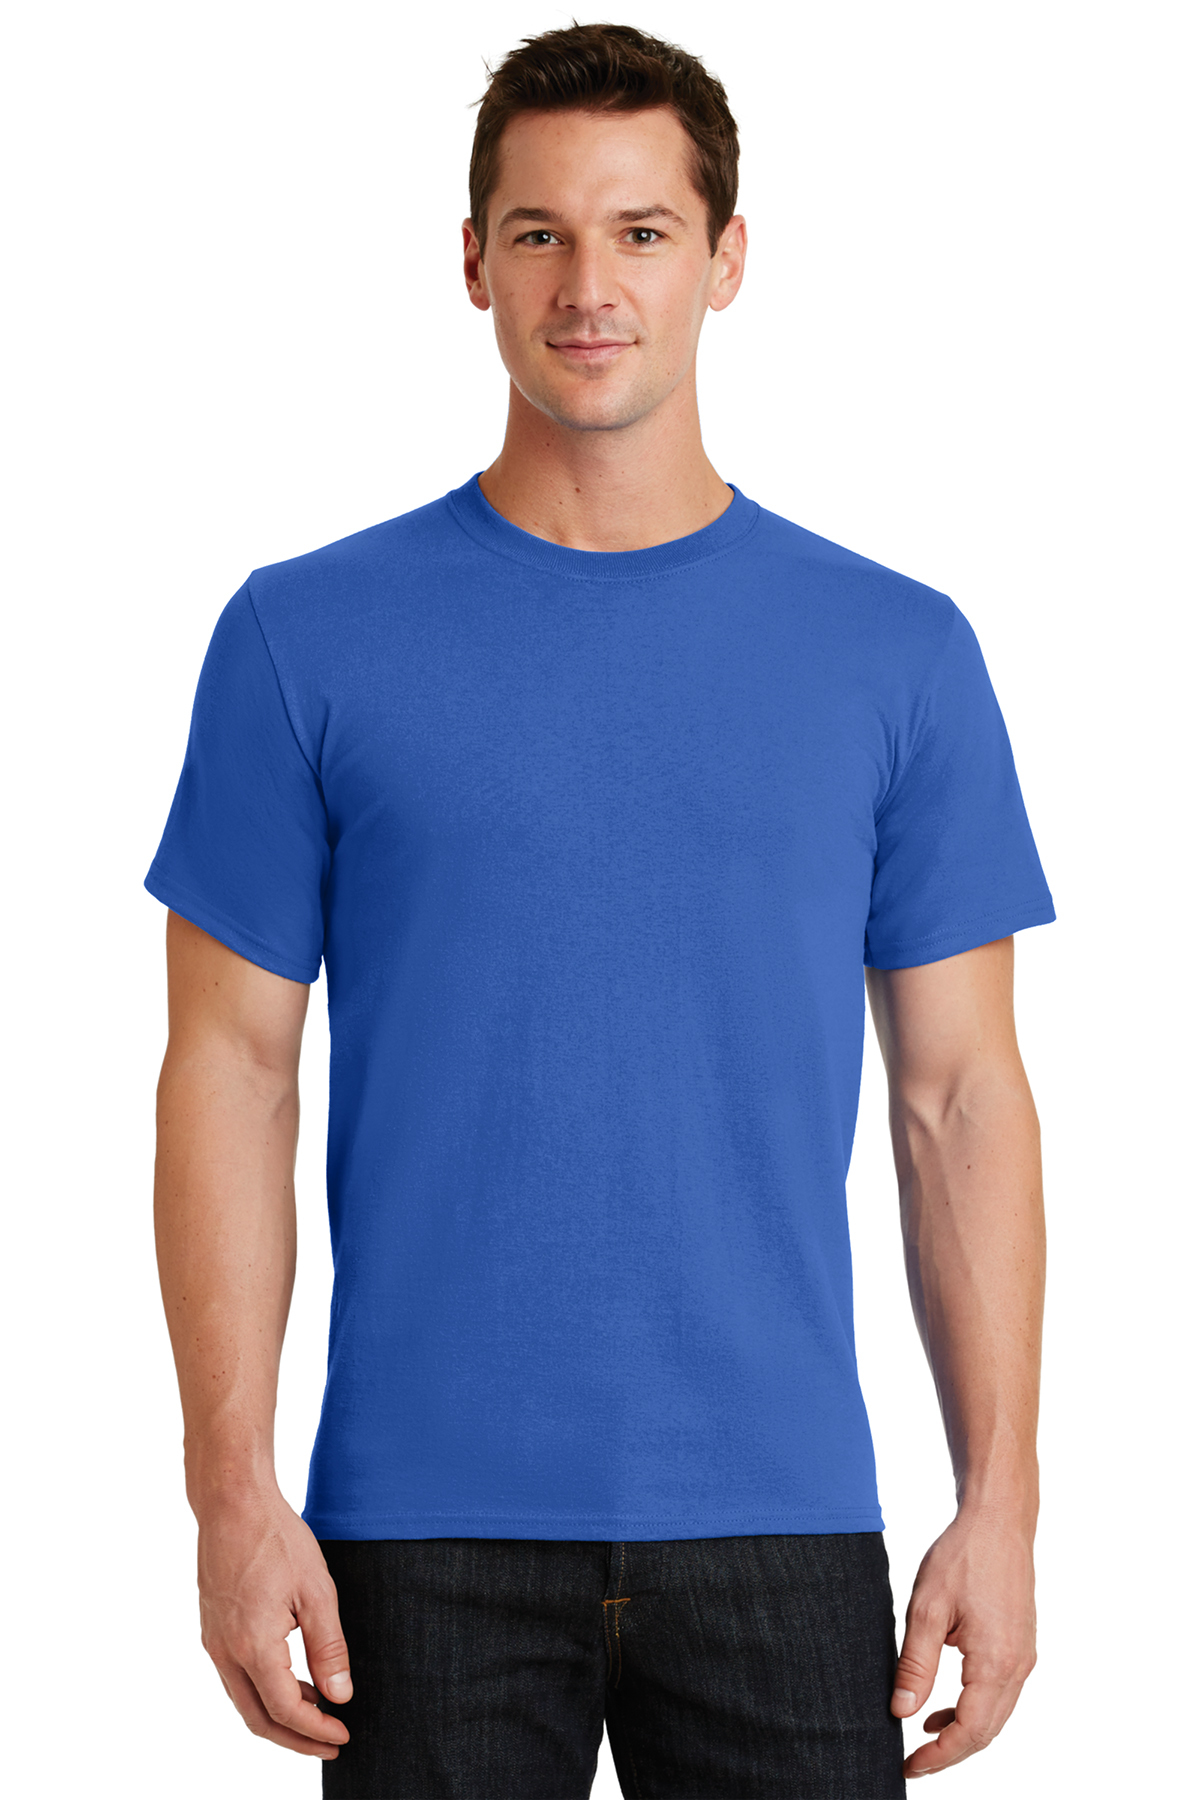 T shirt royal blue | TSE, Inc.